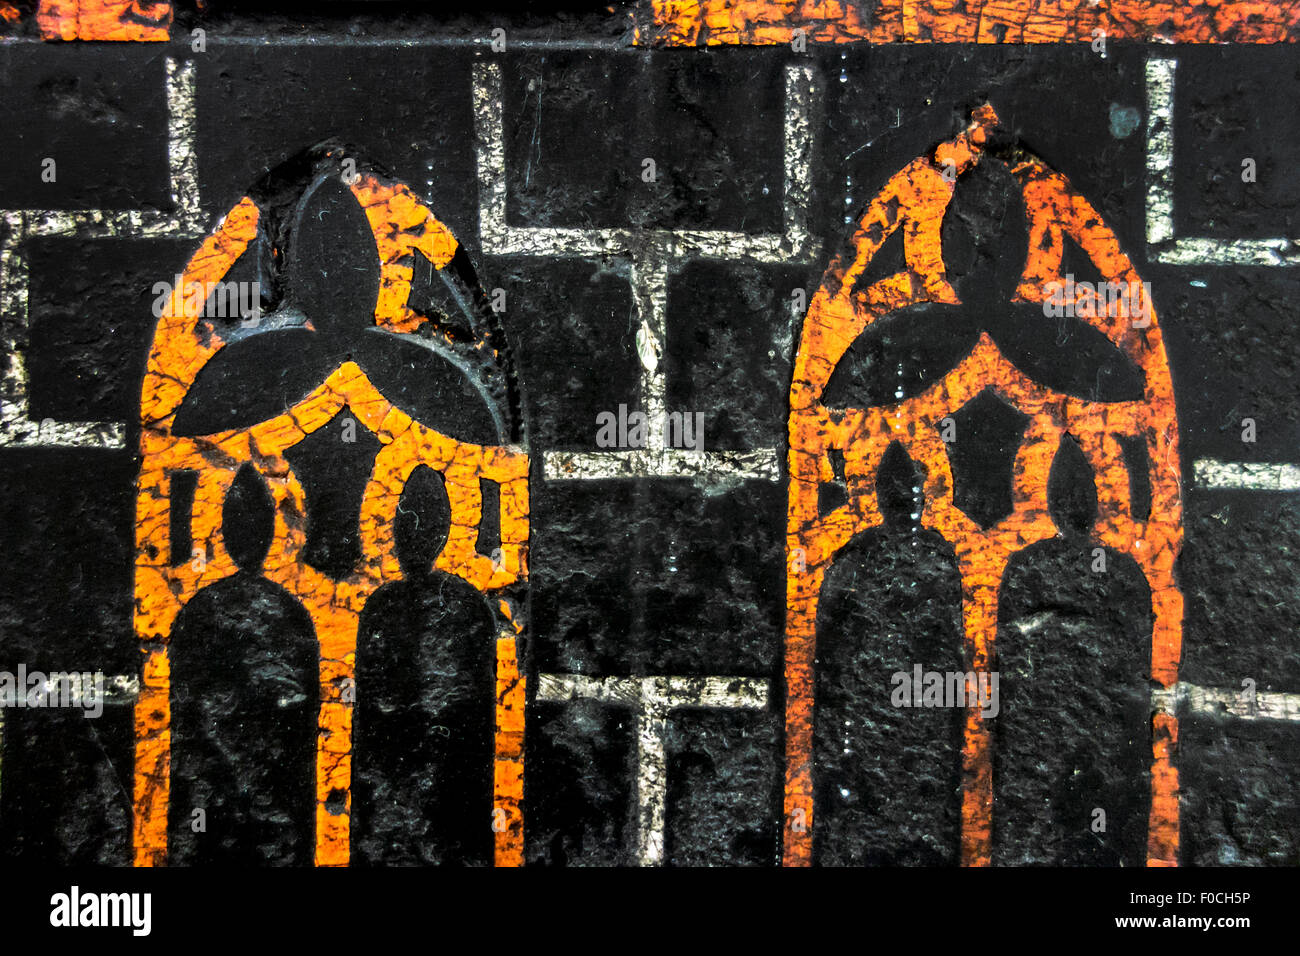 Detalle de epitafio medieval en piedra sepulcral / losa incisa mostrando grabados llenos de pasta de naranja y mármol blanco Foto de stock